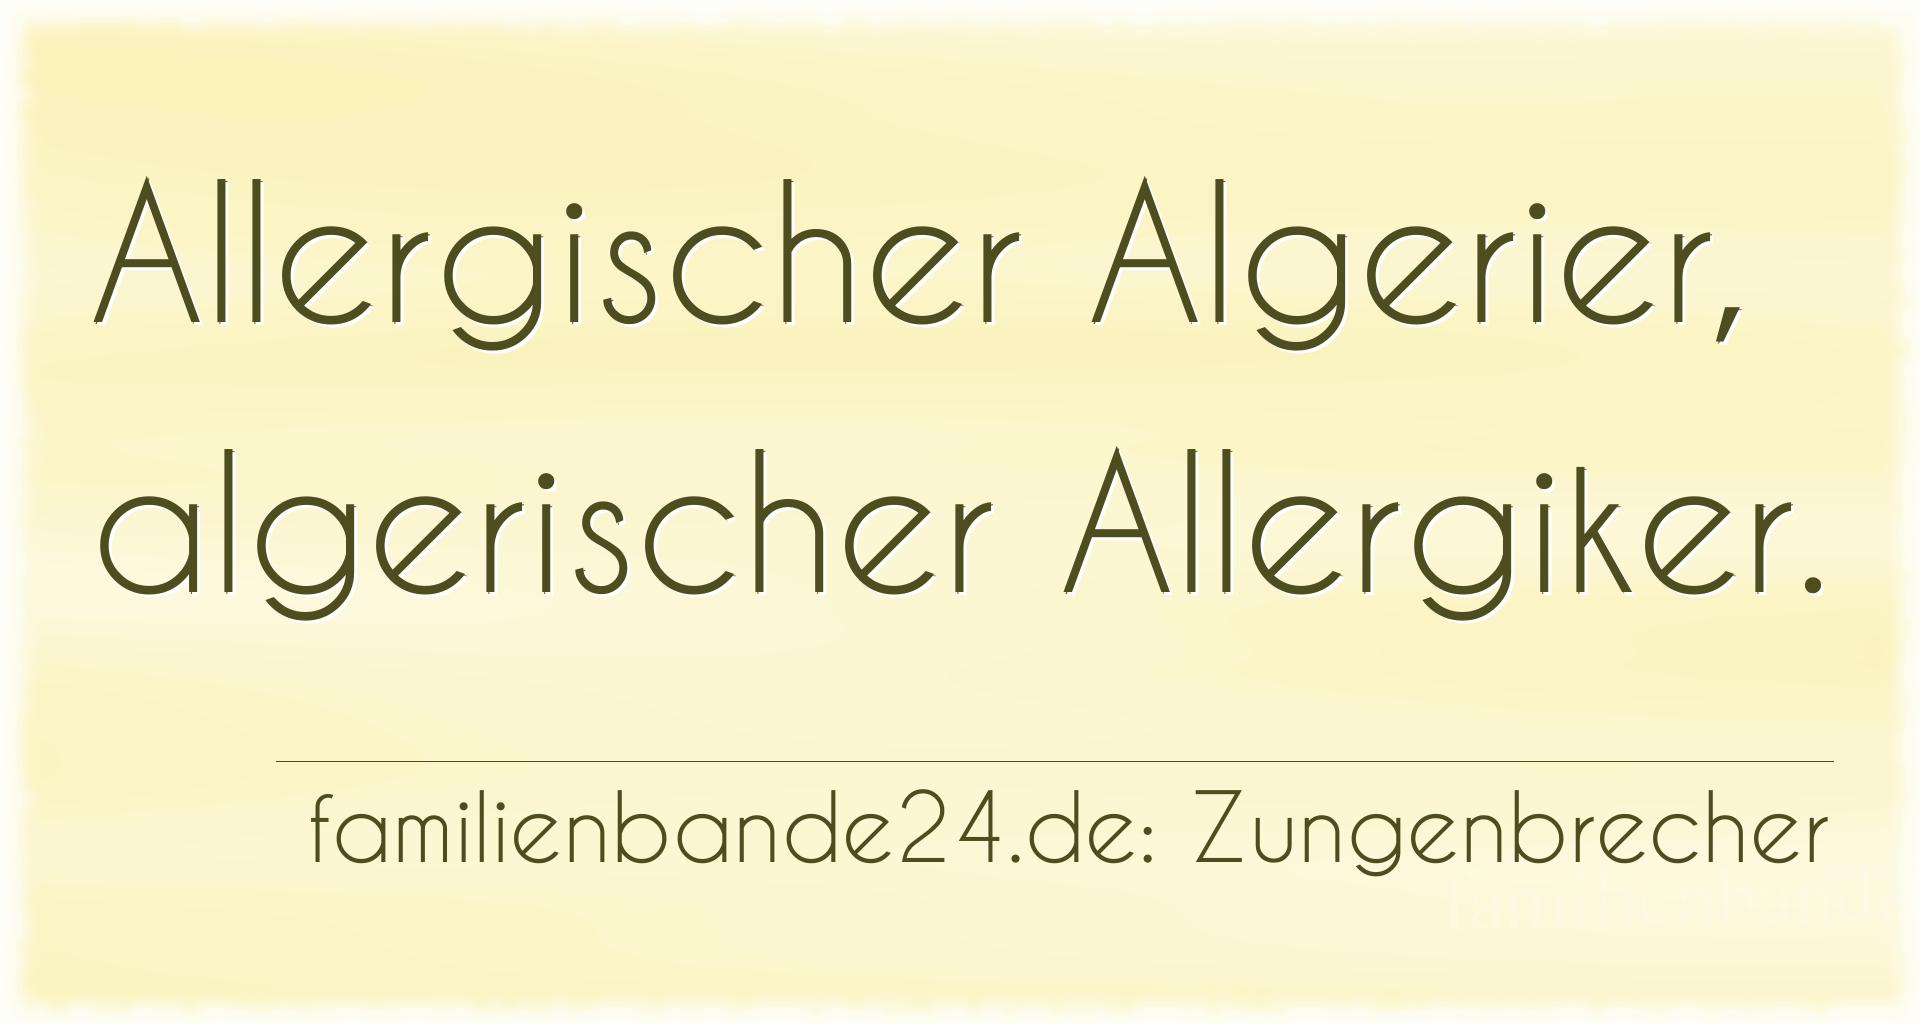 Zungenbrecher Nr. 791: Allergischer Algerier, algerischer Allergiker.